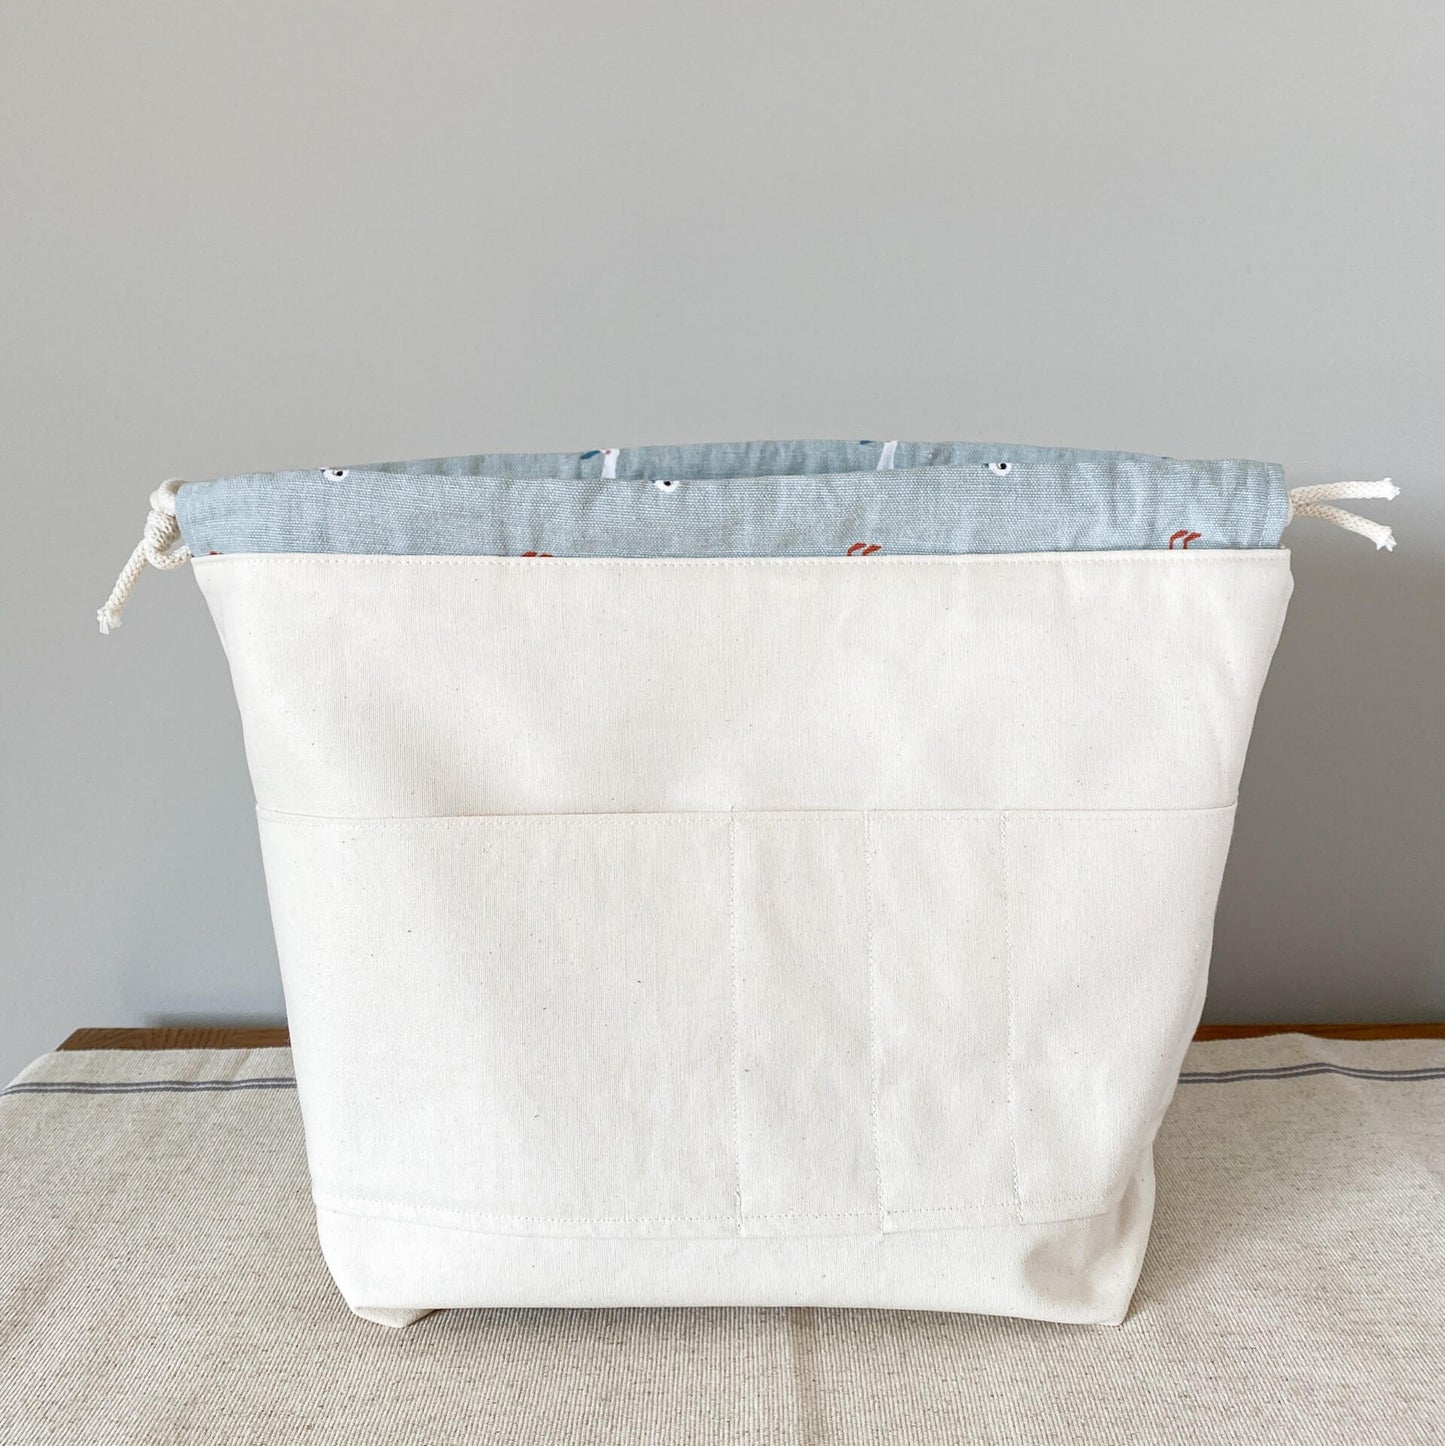 Midi Drawstring Knitting Project Bag - Sheep (style 1)